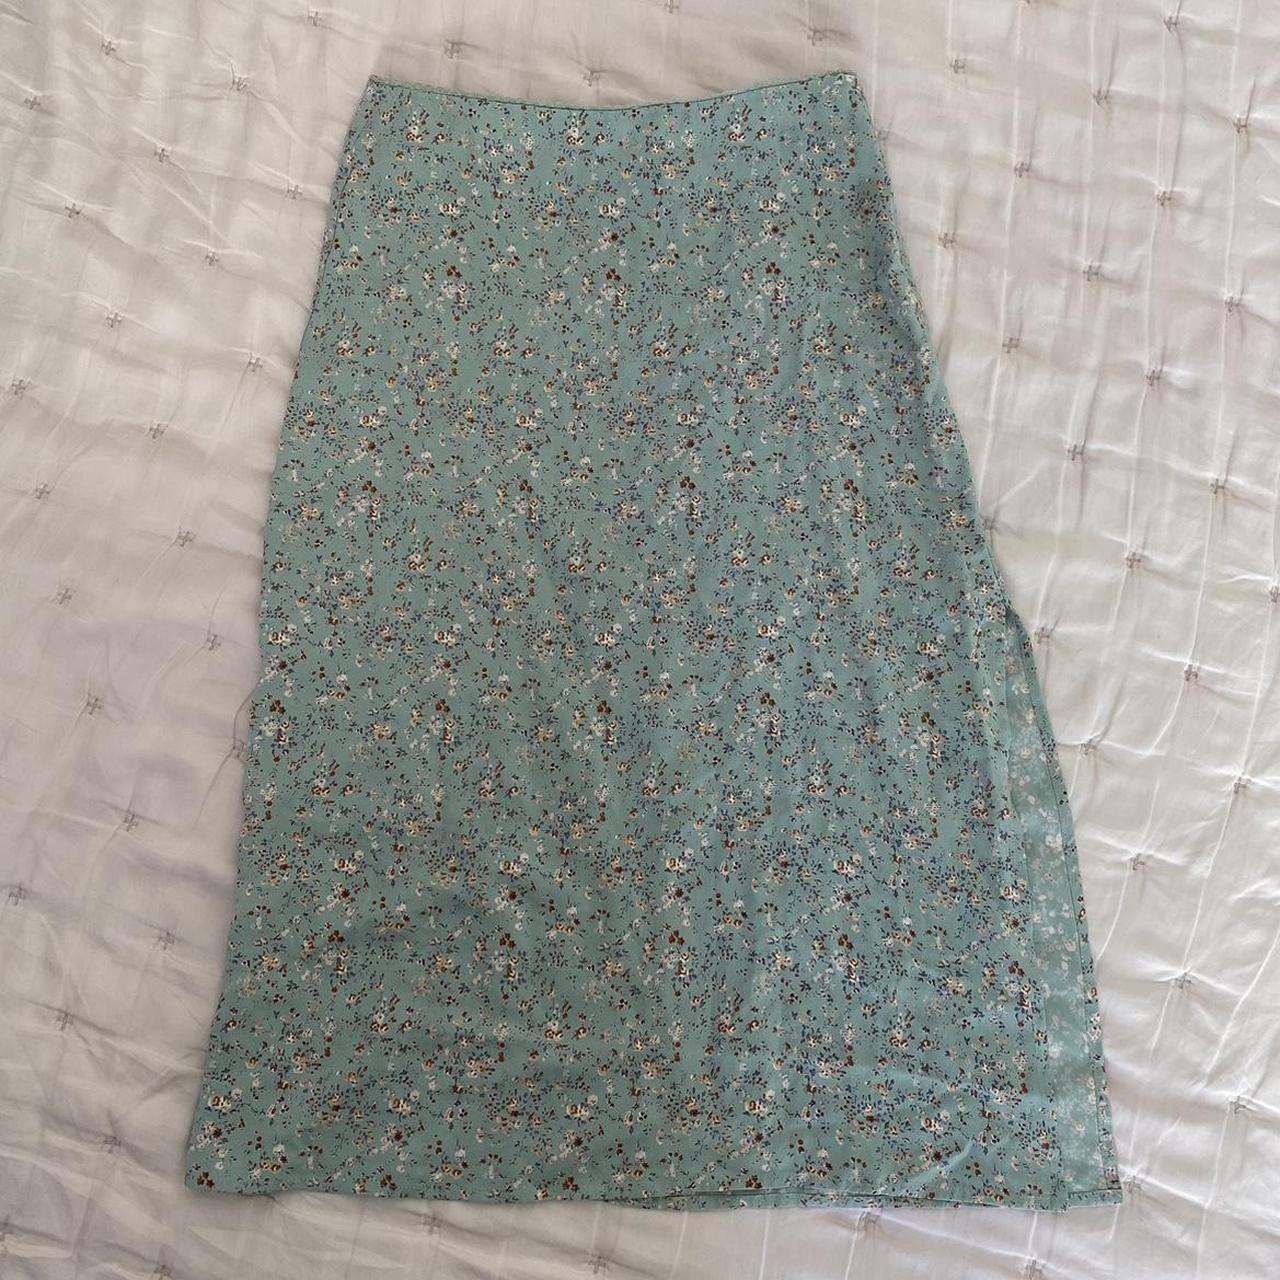 Brandy Melville Women's Green and White Skirt | Depop